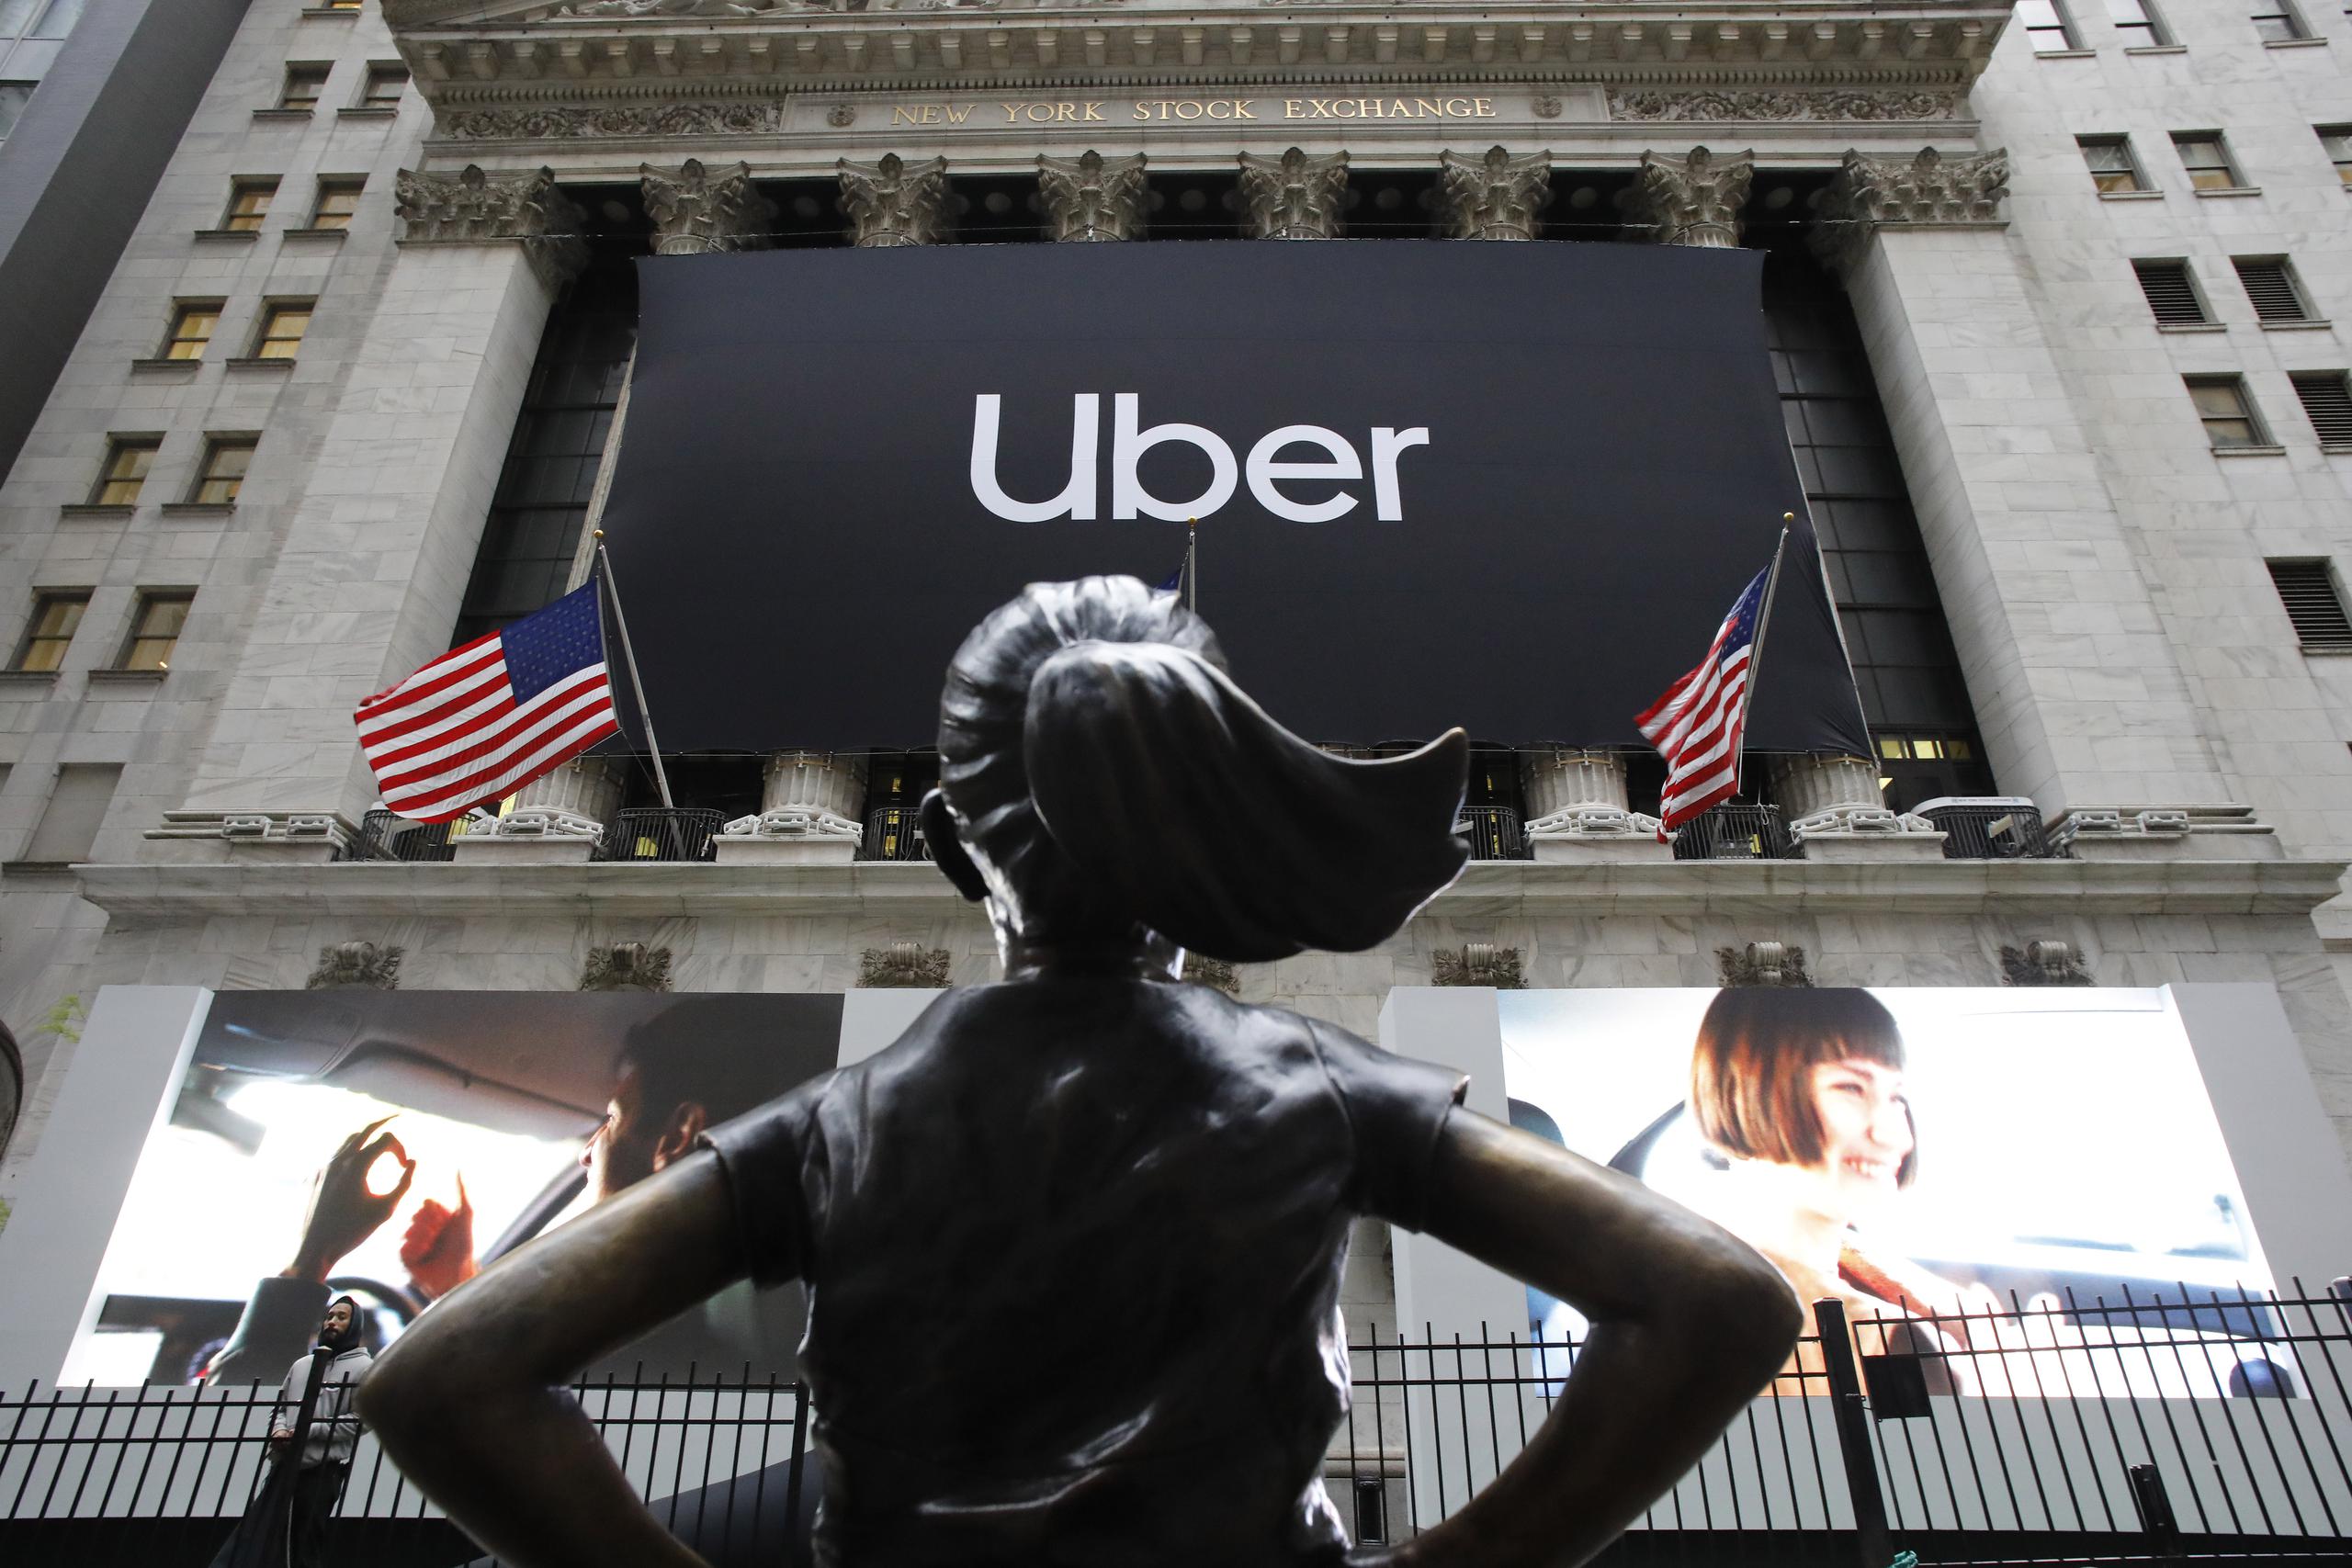 Fundada en 2009, Uber intentó evadir las normativas que regulan los taxis y ofrecer transporte barato a través de una aplicación.